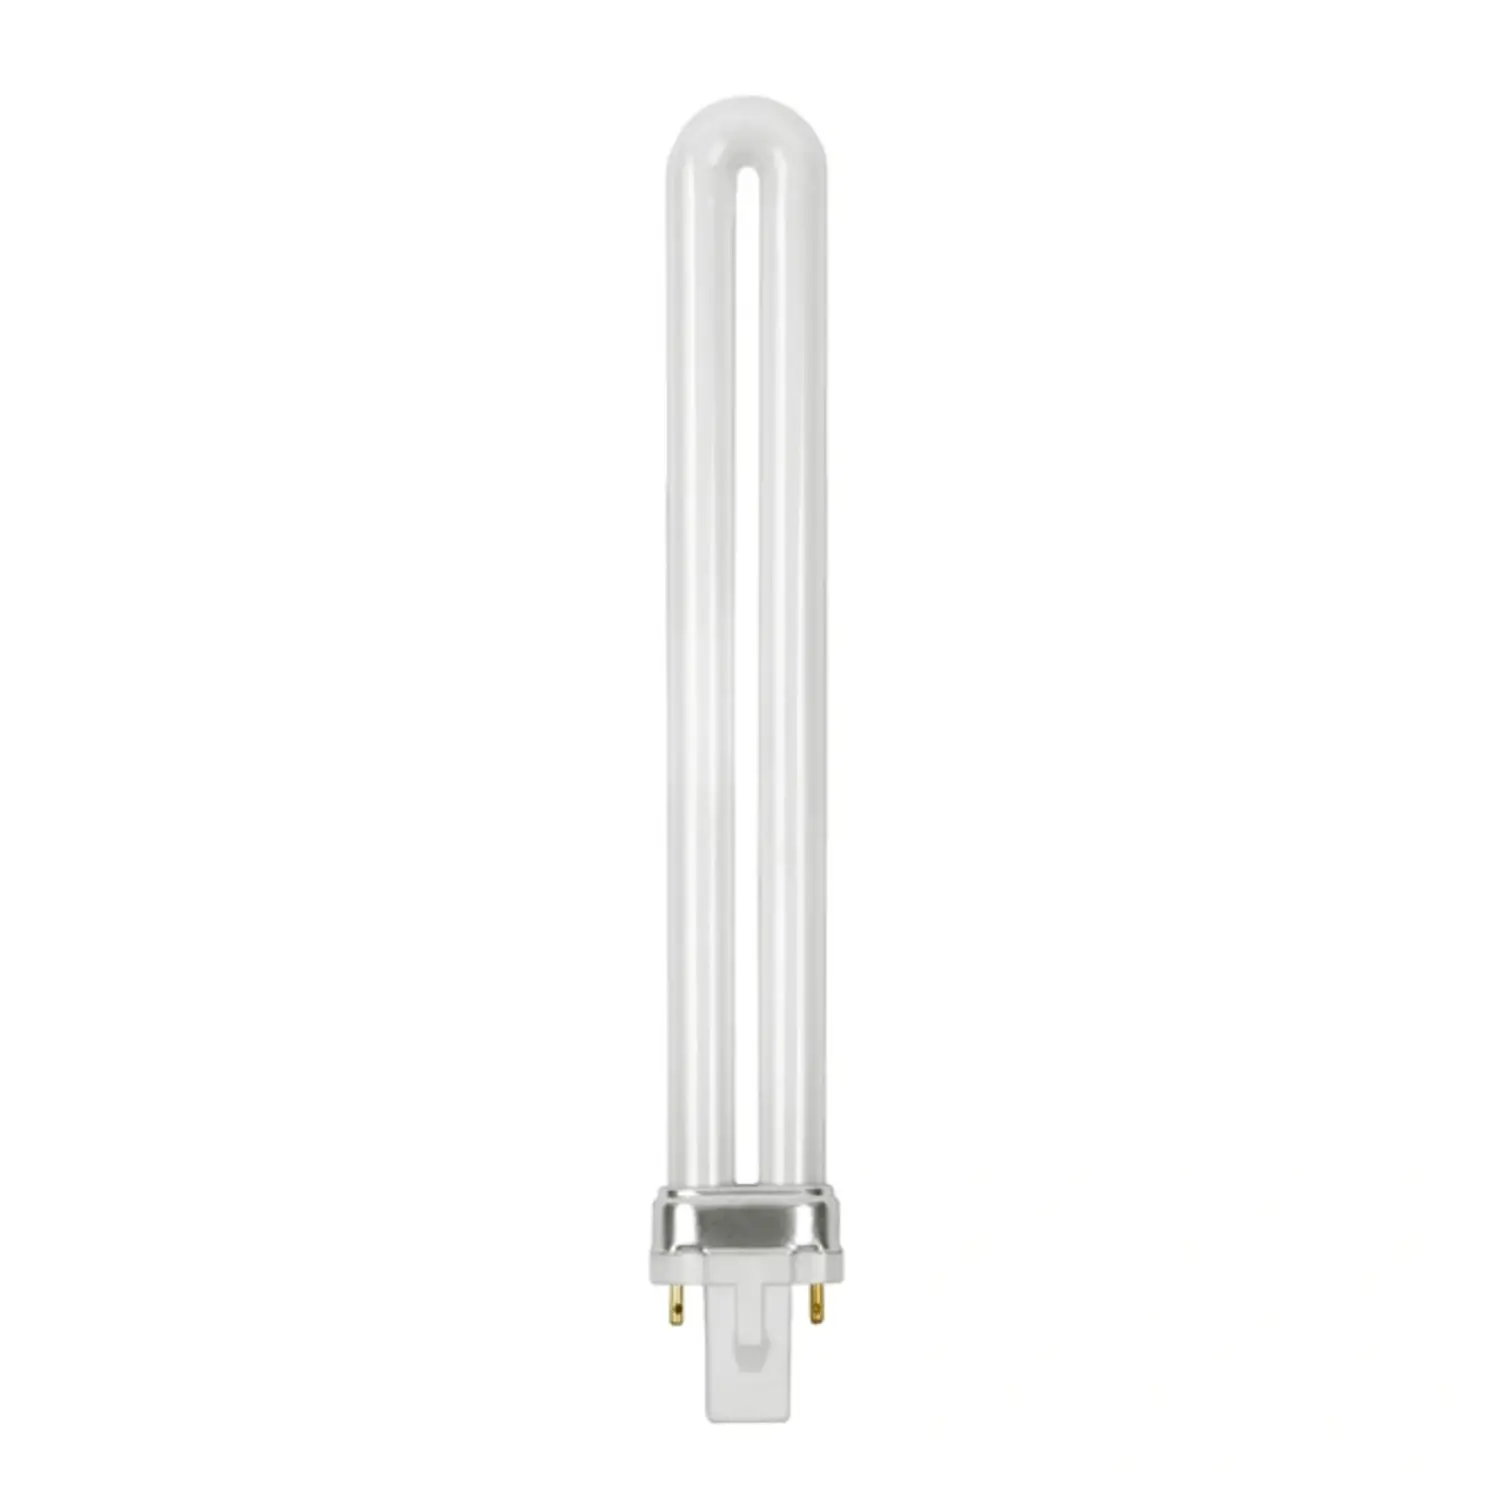 immagine del prodotto lampadina neon fluorescente G23 CE bianco naturale 8000 ore 11 watt kan 10672